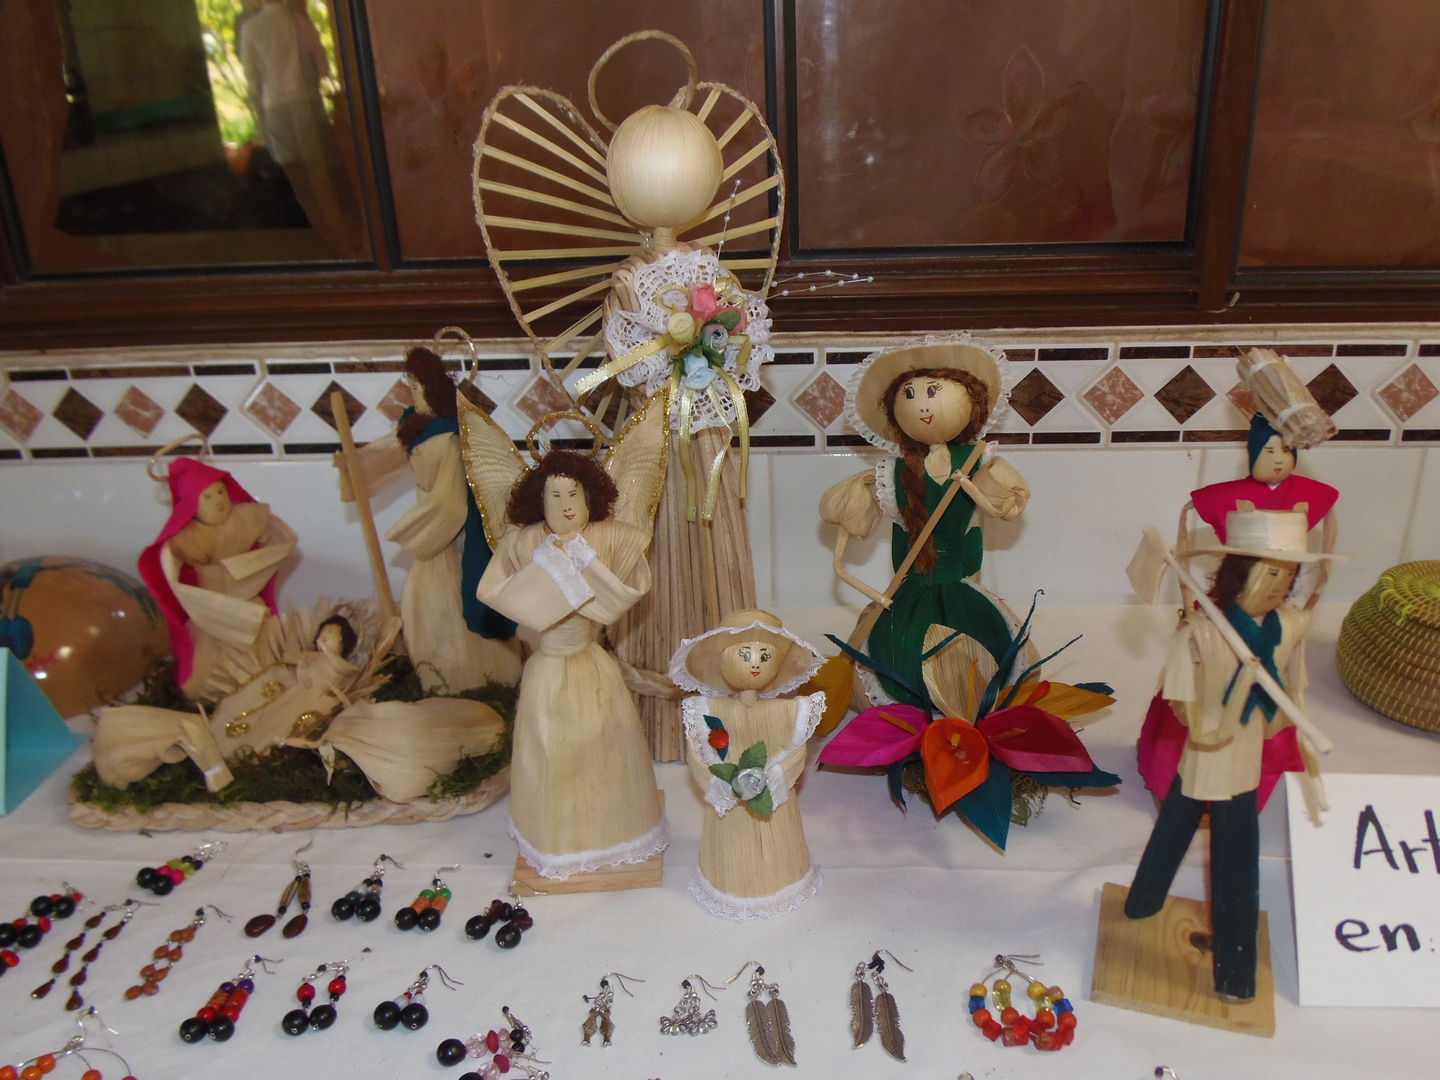 Las diferentes piezas artesanales elaboradas por manos campesinas indígenas de los municipios de Cusmapa, San Lucas, Totogalpa, Telpaneca y Mozonte.   